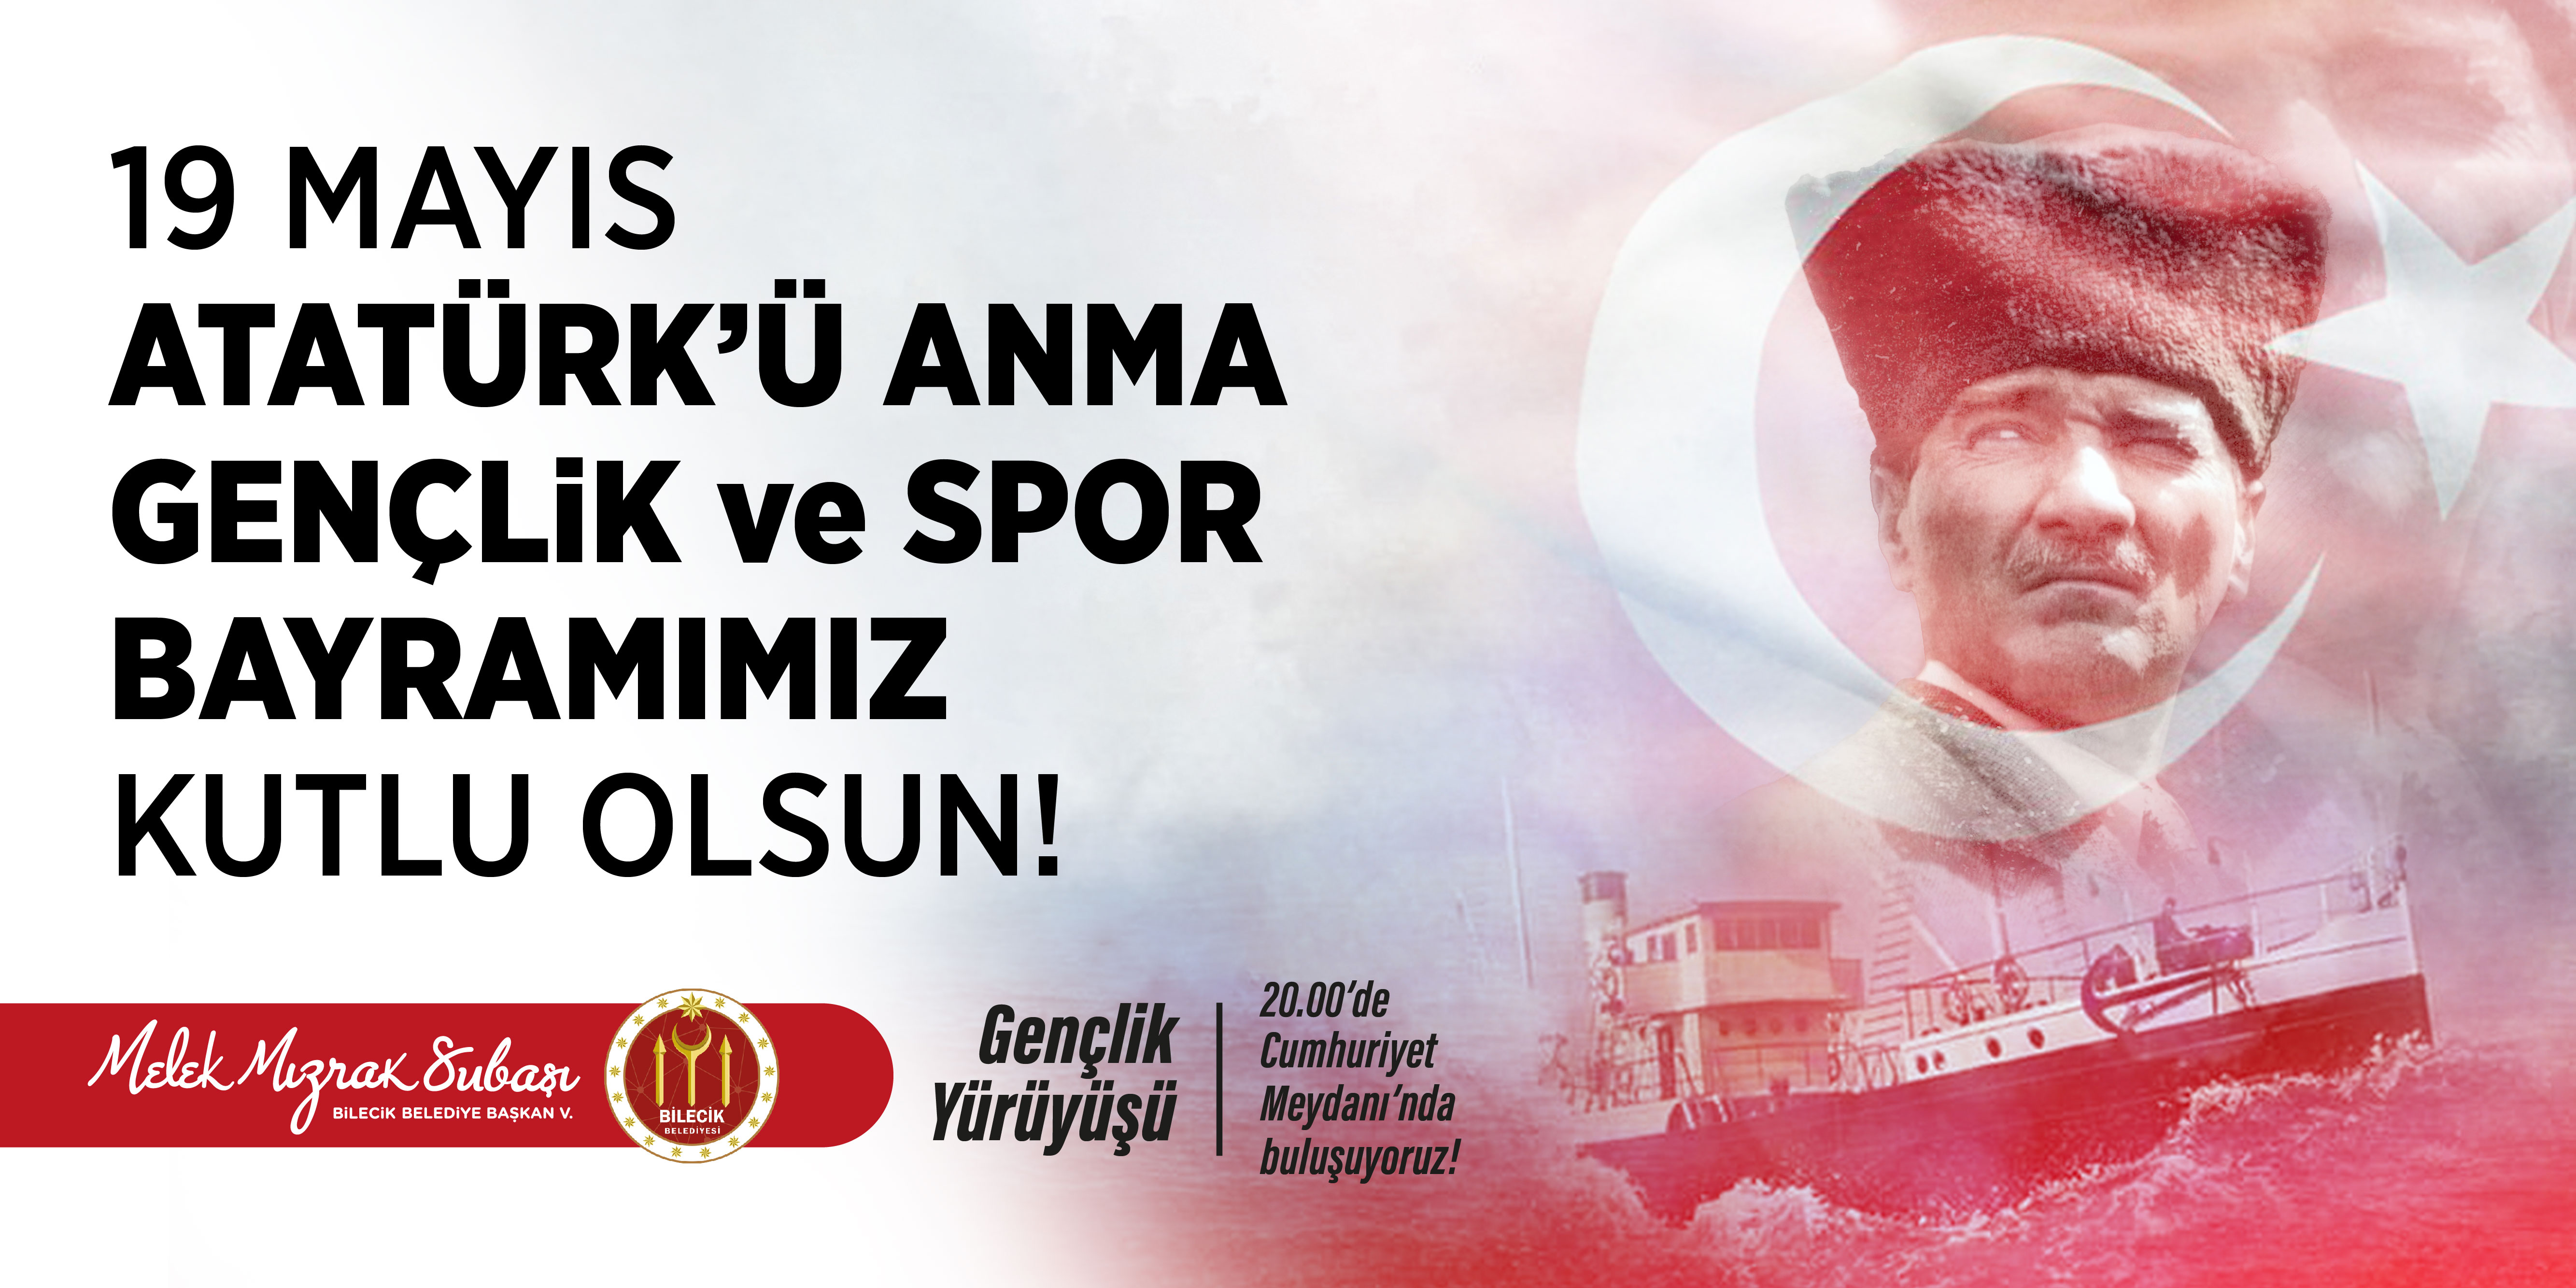 19 Mayıs Atatürk'ü Anma ve Spor Bayramımız Kutlu Olsun - Bilecik Belediye Başkan V. Melek Mızrak Subaşı